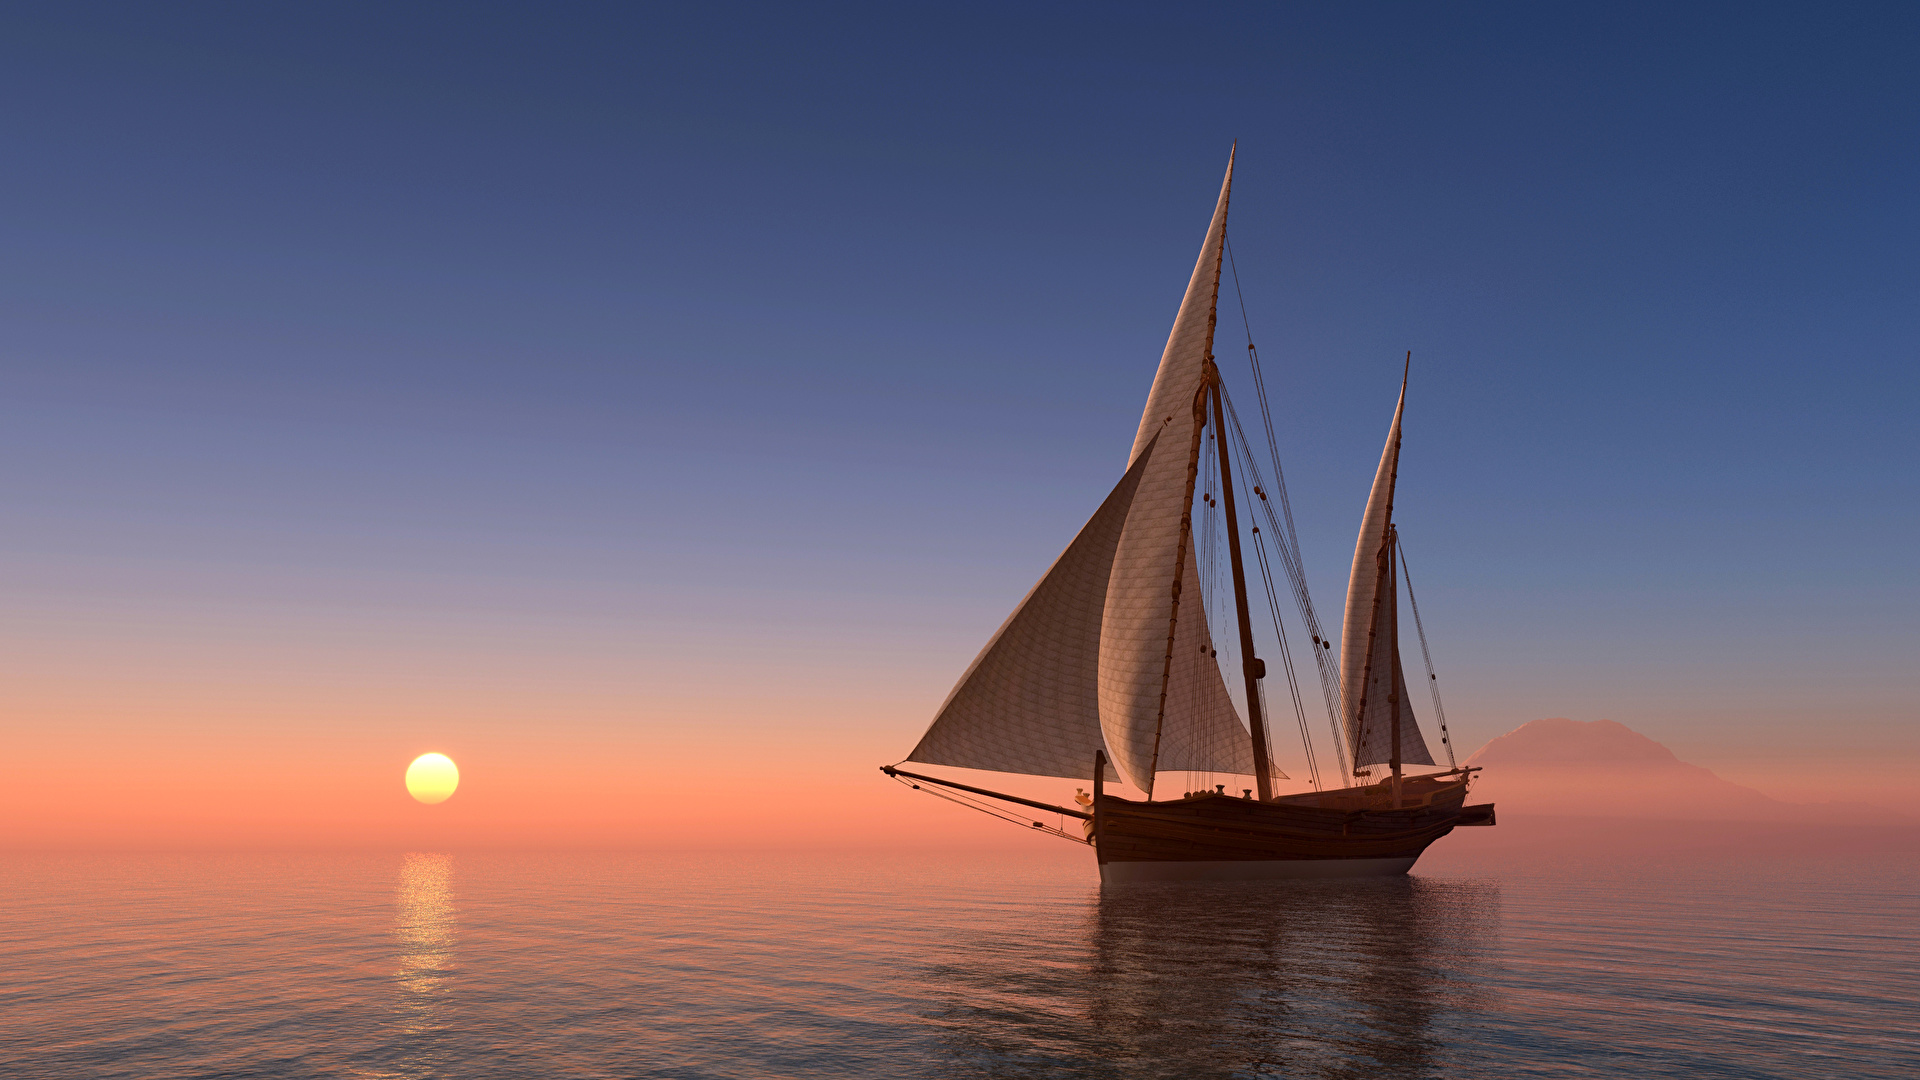 barco wallpaper,water transportation,sailing,sail,boat,sky